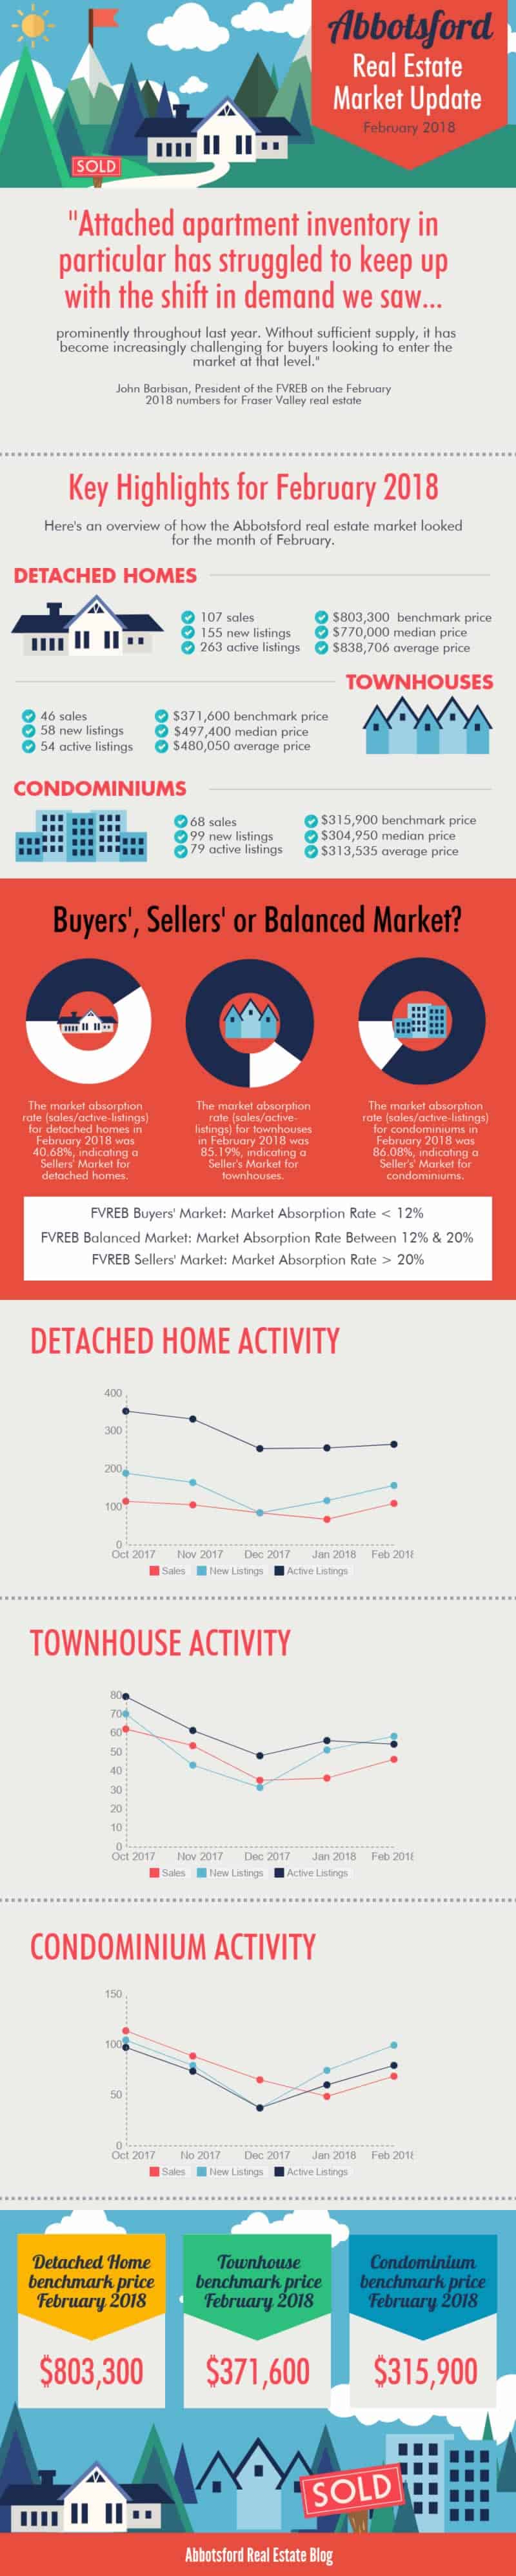 Abbotsford Condominium Market Update February 2018 Infographic